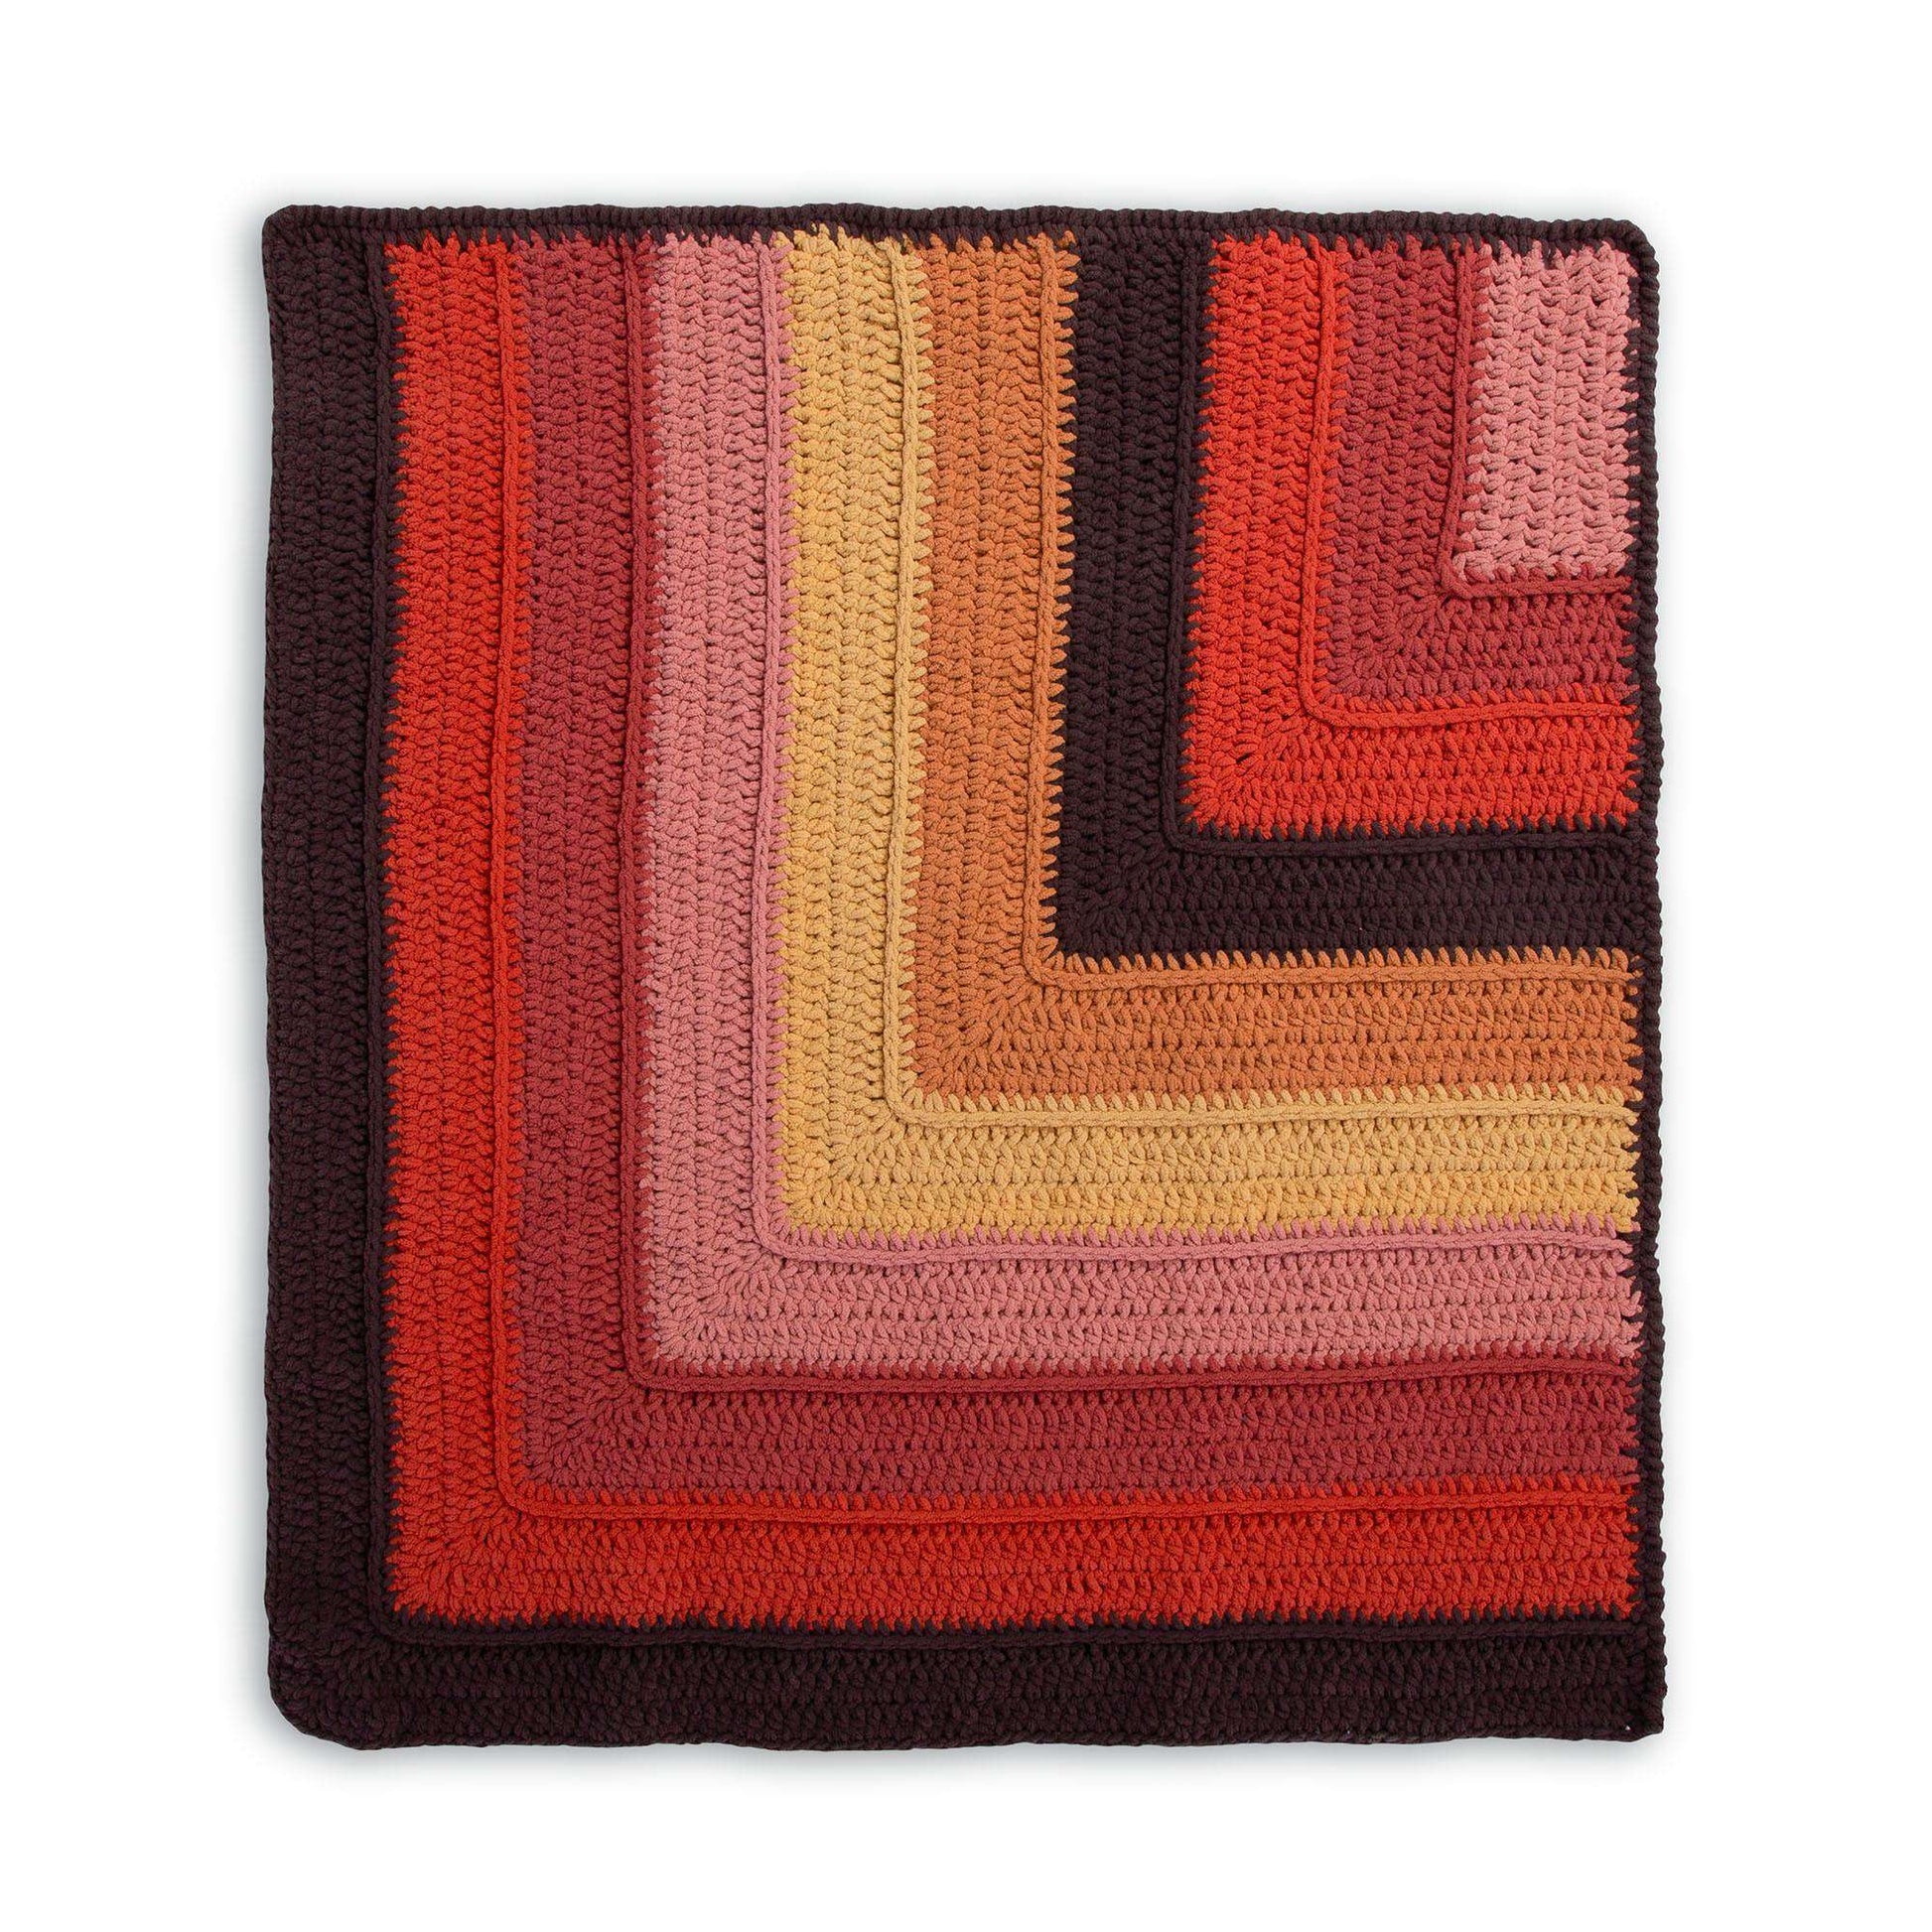 Free Bernat Striped Steps Crochet Blanket Pattern